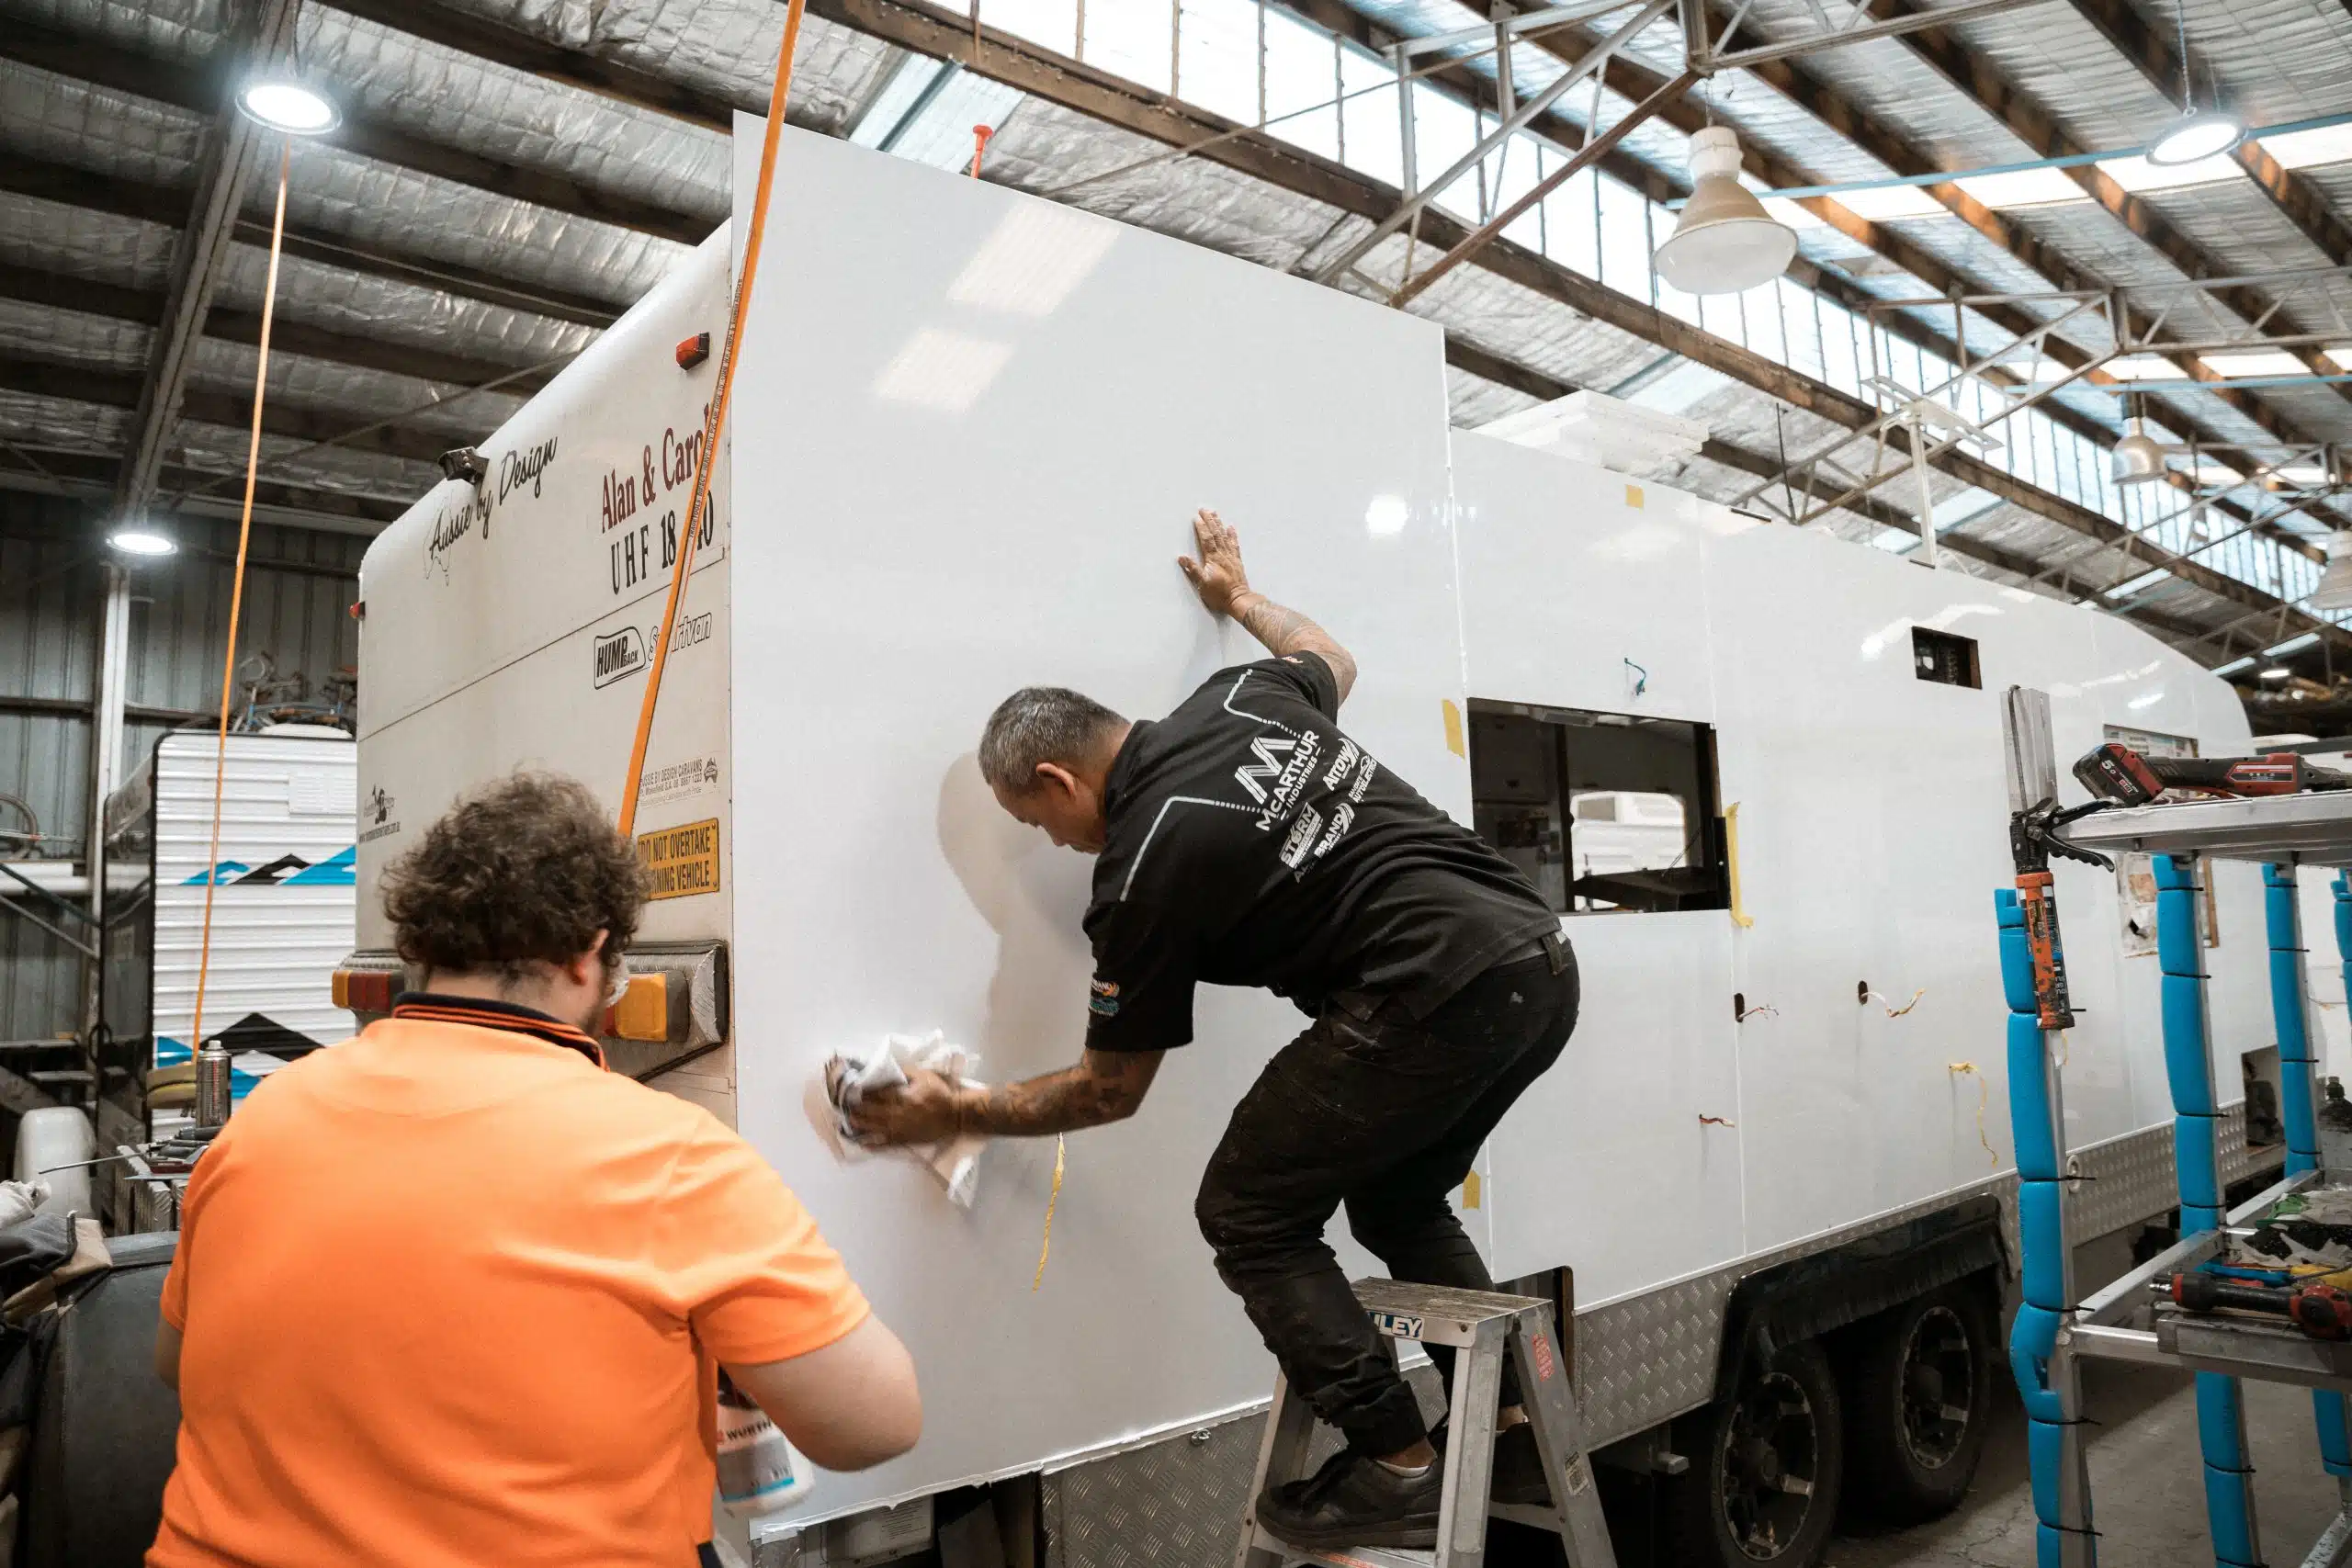 Caravan body repairs in progress: Technician fixes damage on the sidewall in a workshop